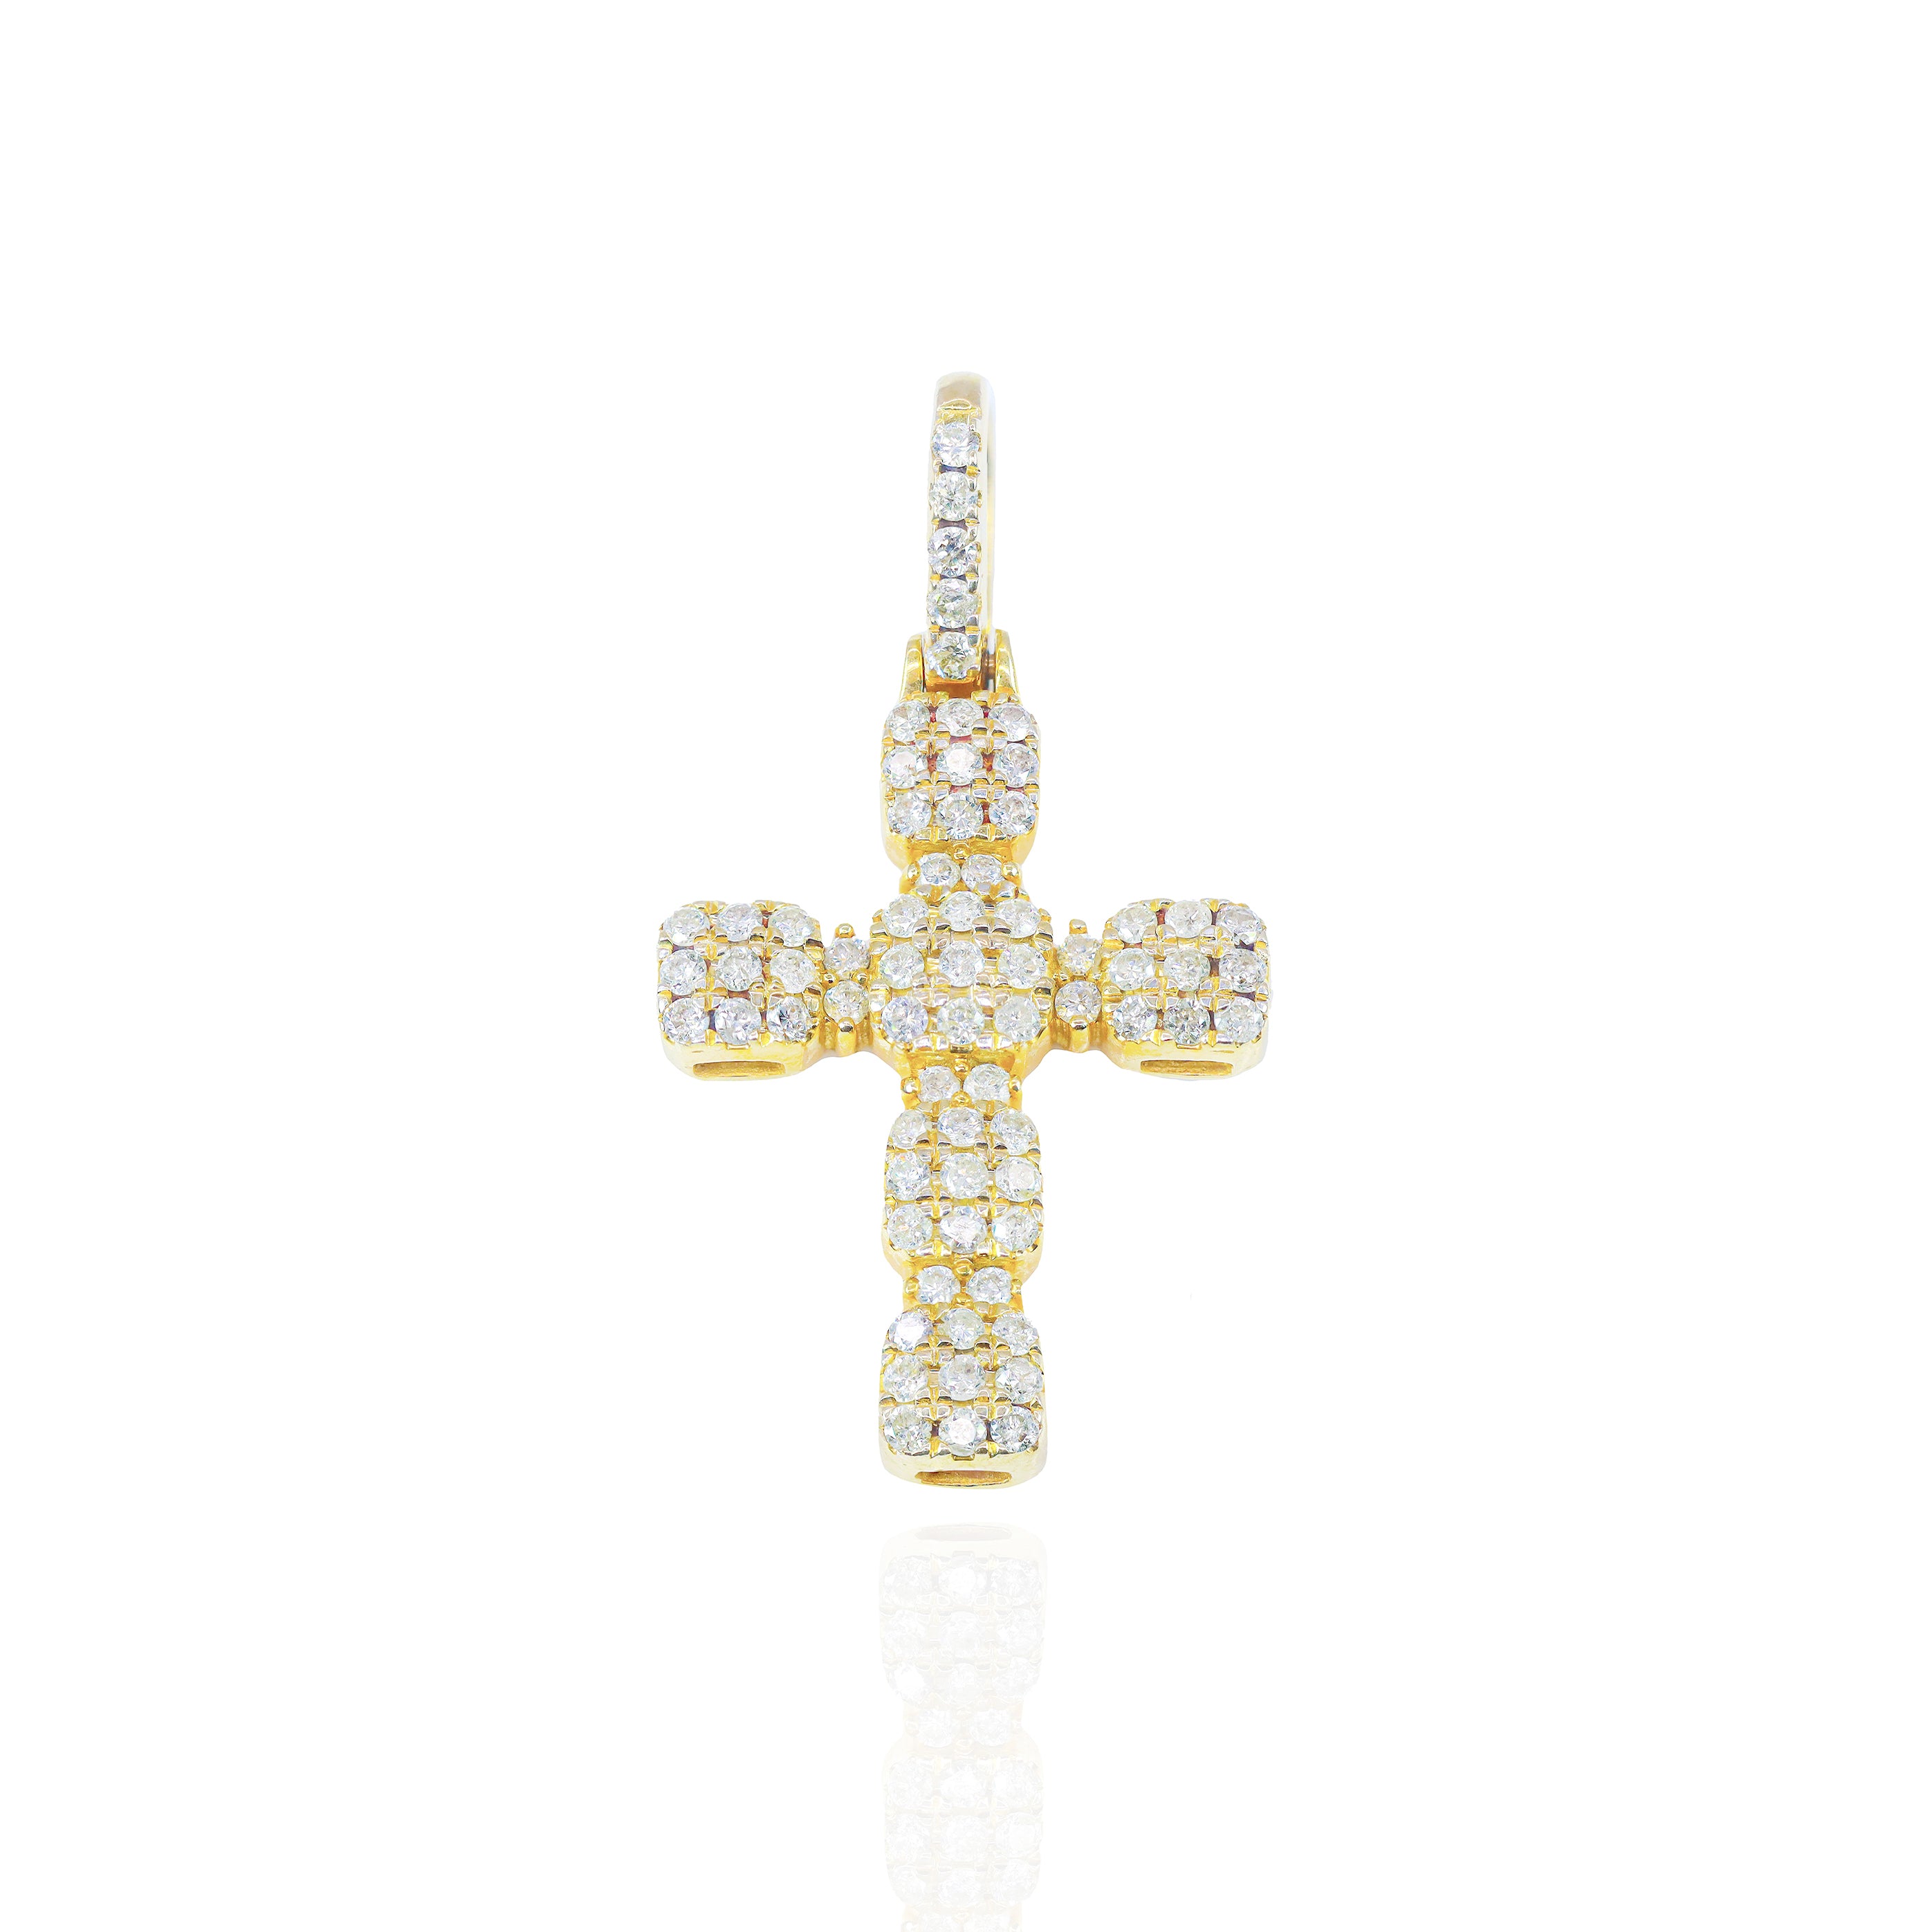 Mini Golden Cross with Round Diamonds Pendant